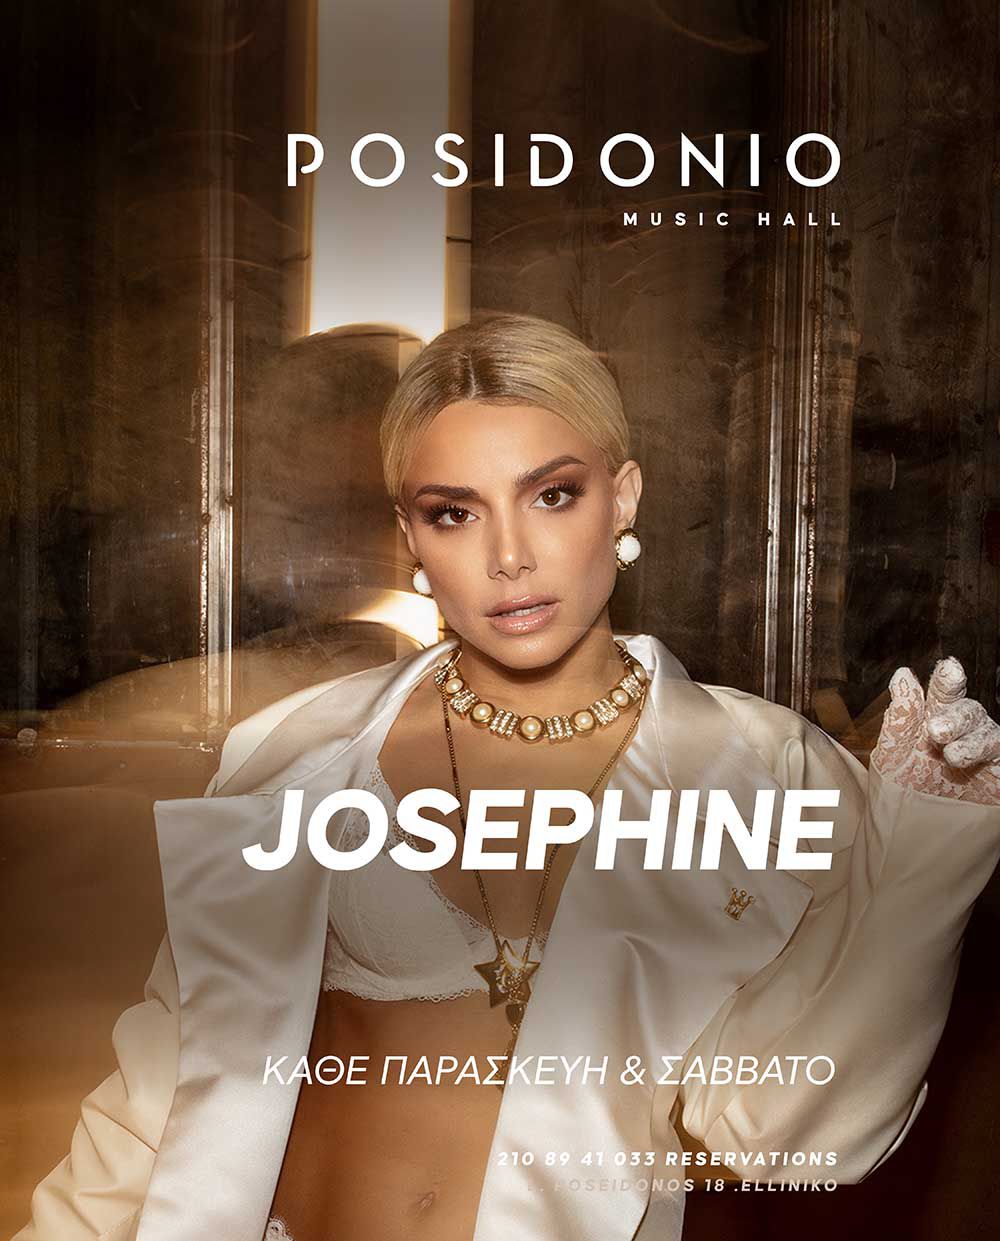 Θοδωρής Φέρρης - Josephine: Η επιτυχία συνεχίζεται στο «Posidonio»!